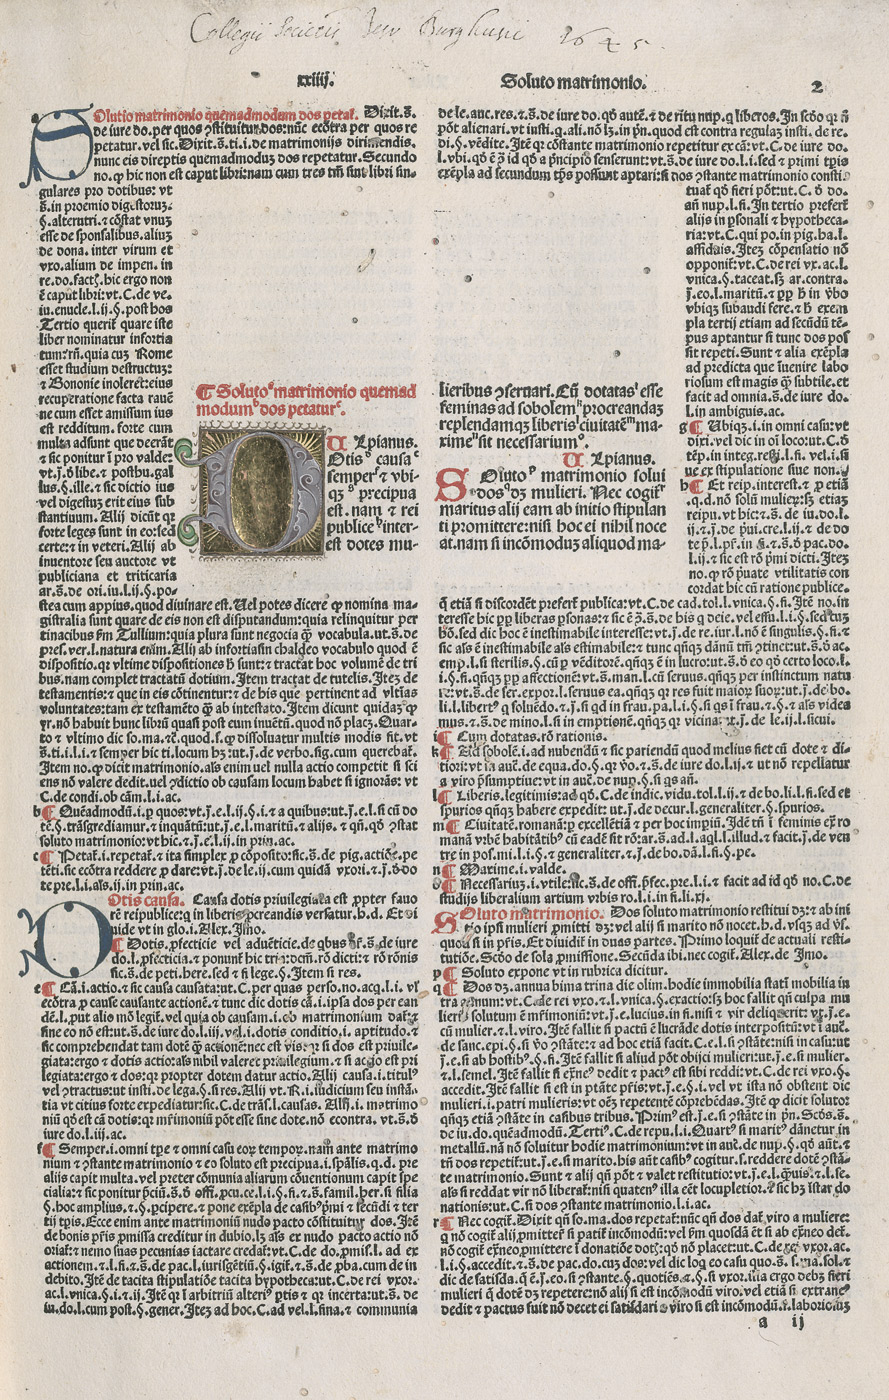 Lot 1089, Auction  115, Corpus iuris civilis, Infortiatum de Tortis. - Digestum vetus de Tortis